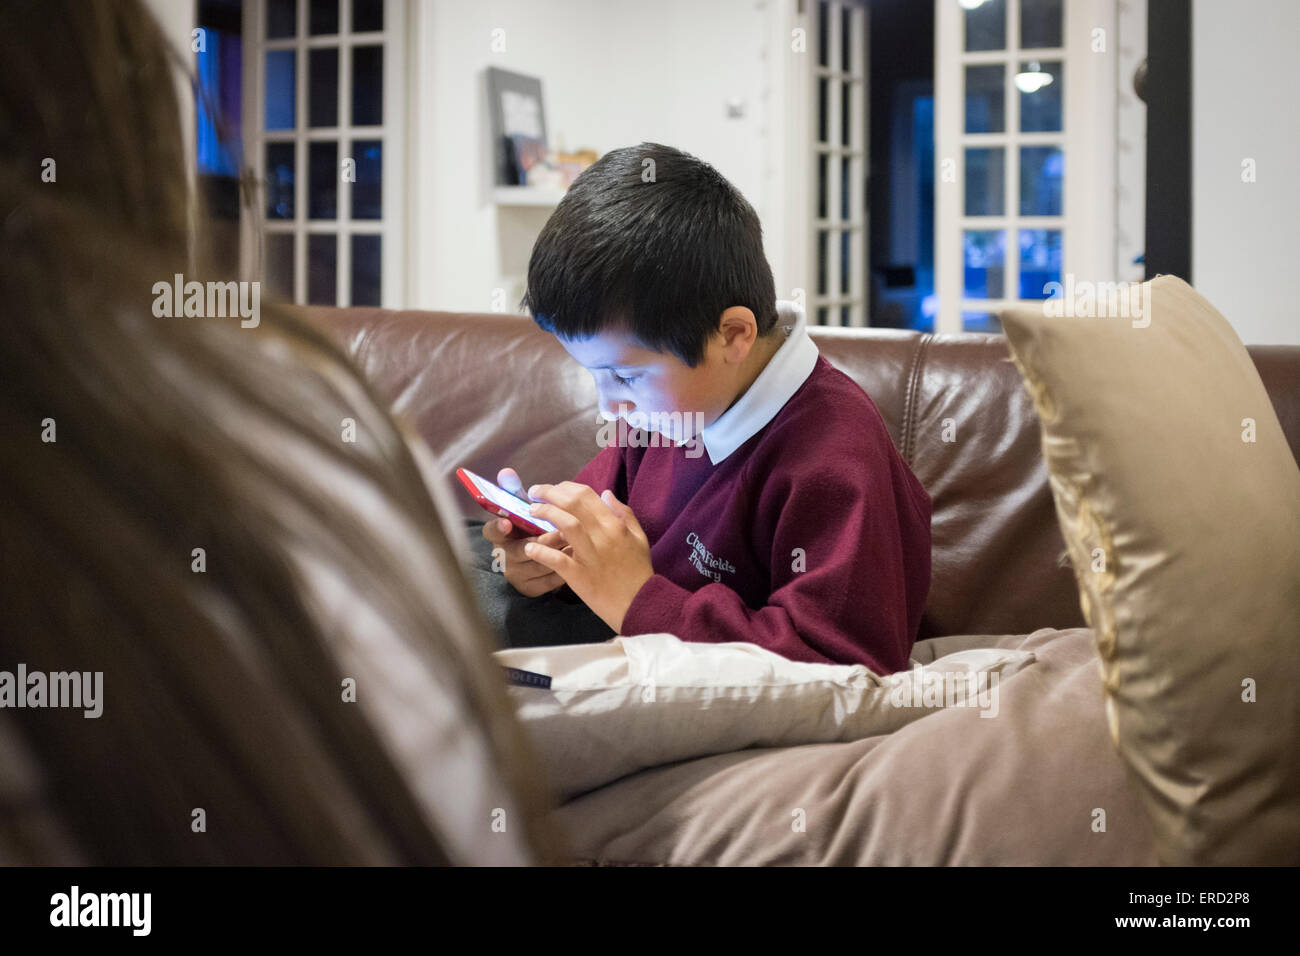 El colegial,7,jugar en teléfonos inteligentes. Foto de stock